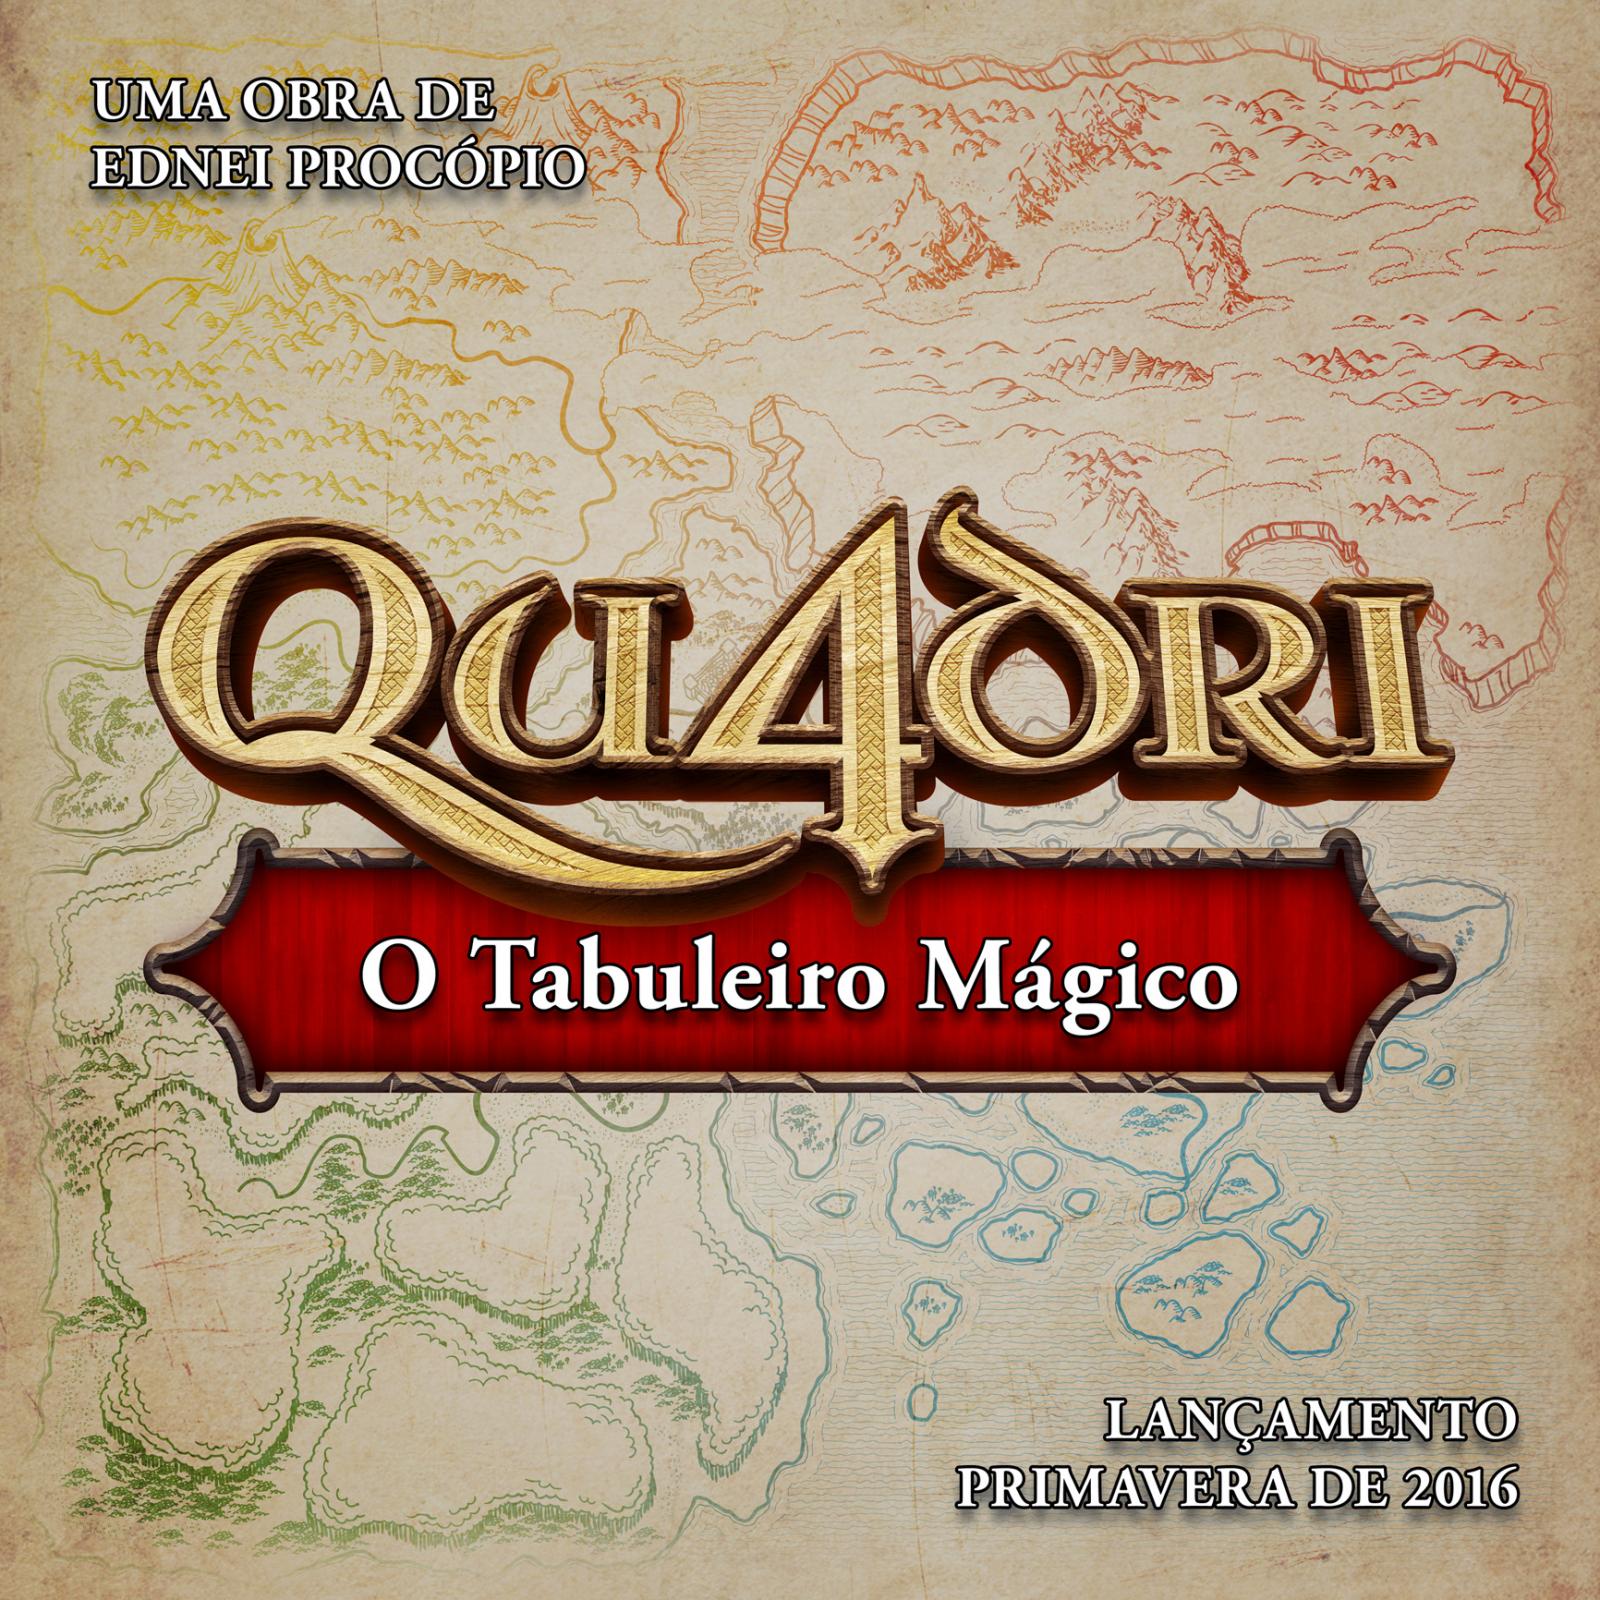 QU4DRI - O Tabuleiro Mágico é uma ficção fantástica escrita por Ednei Procópio e publicada em setembro de 2016 durante a Bienal Internacional do Livro de São Paulo.